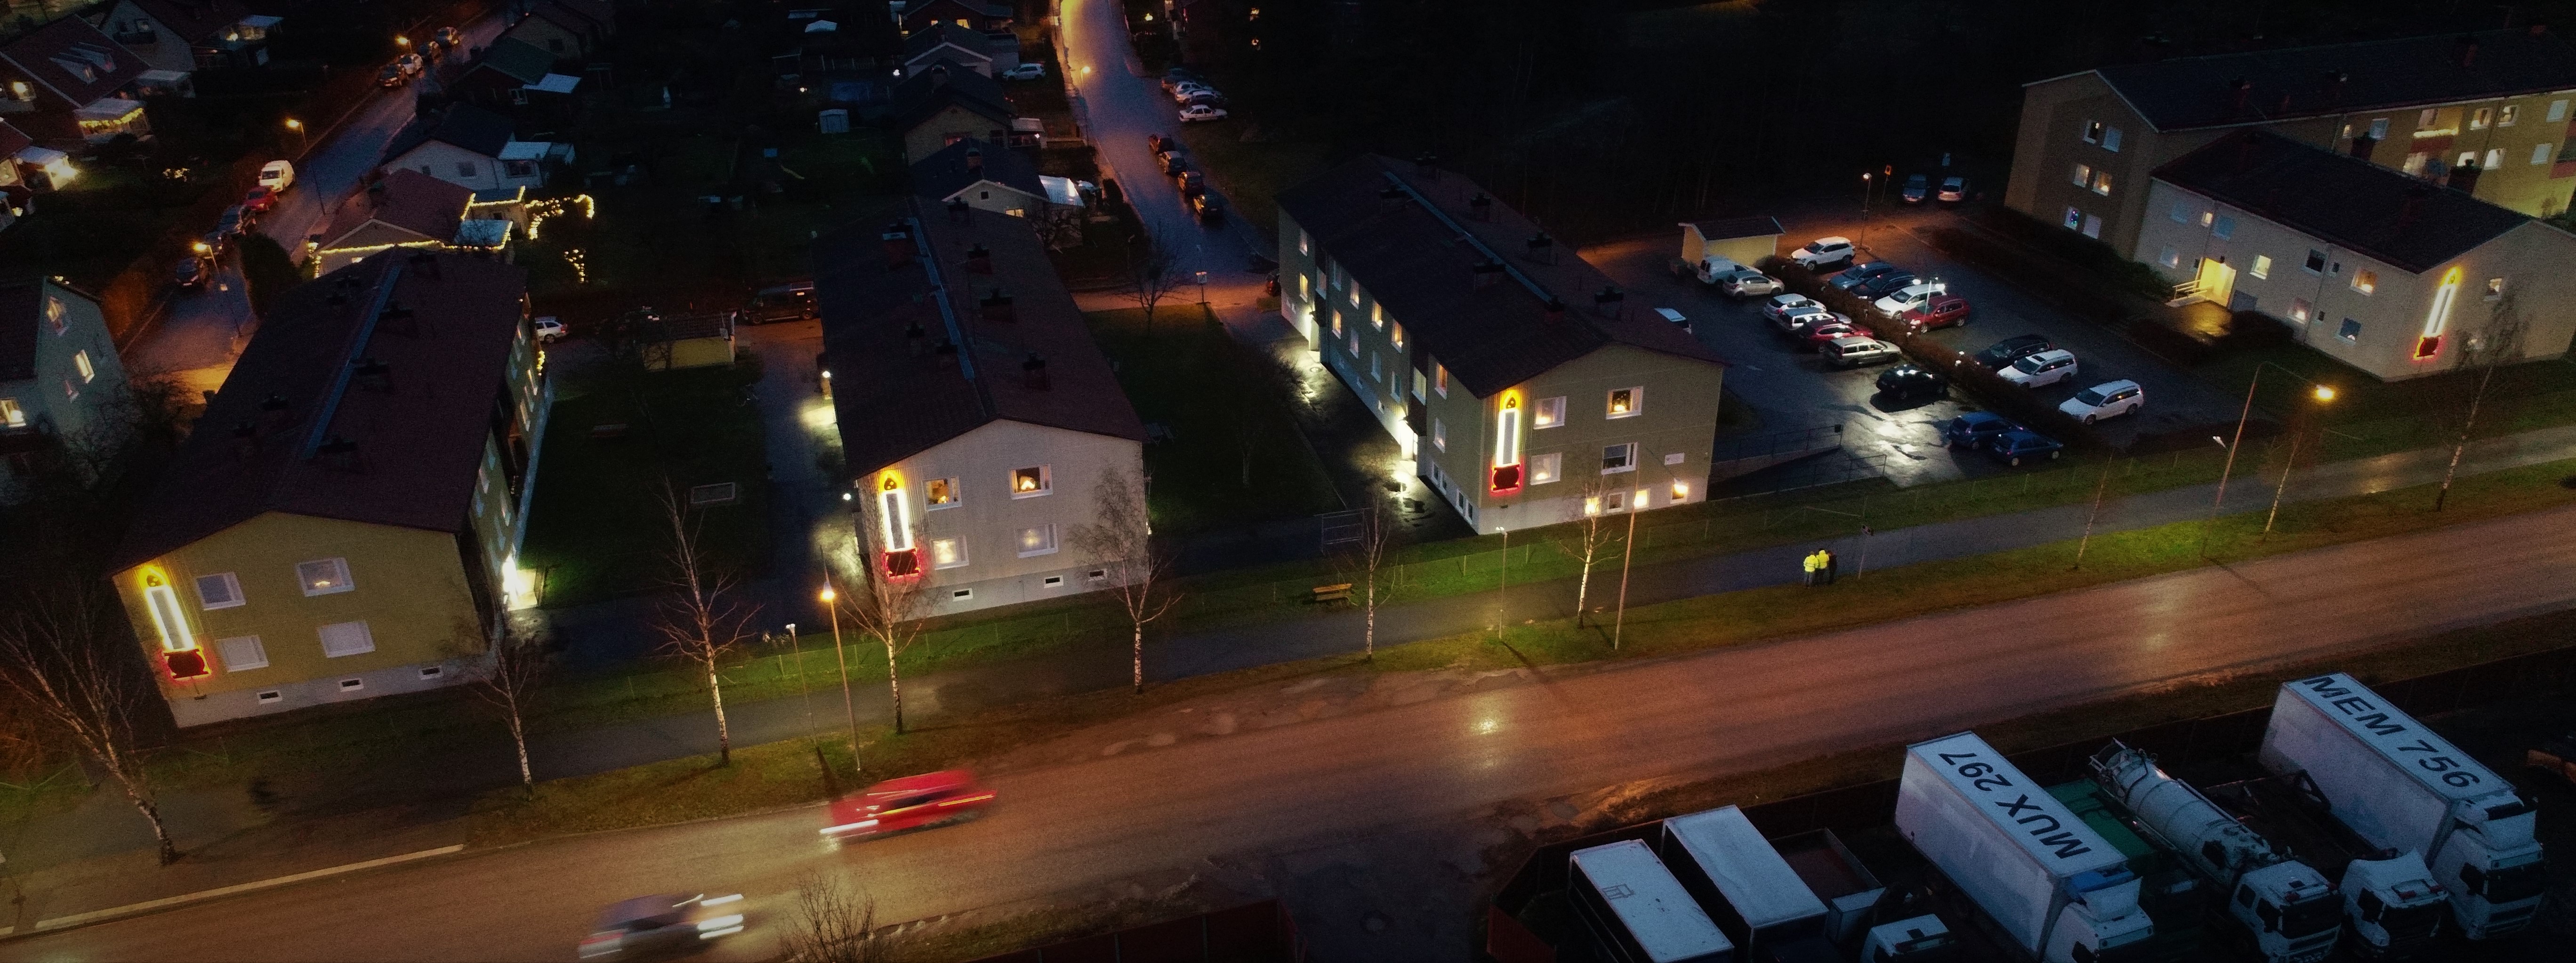 Fyra hus som bygger upp en adventsljusstake med fyra ljus